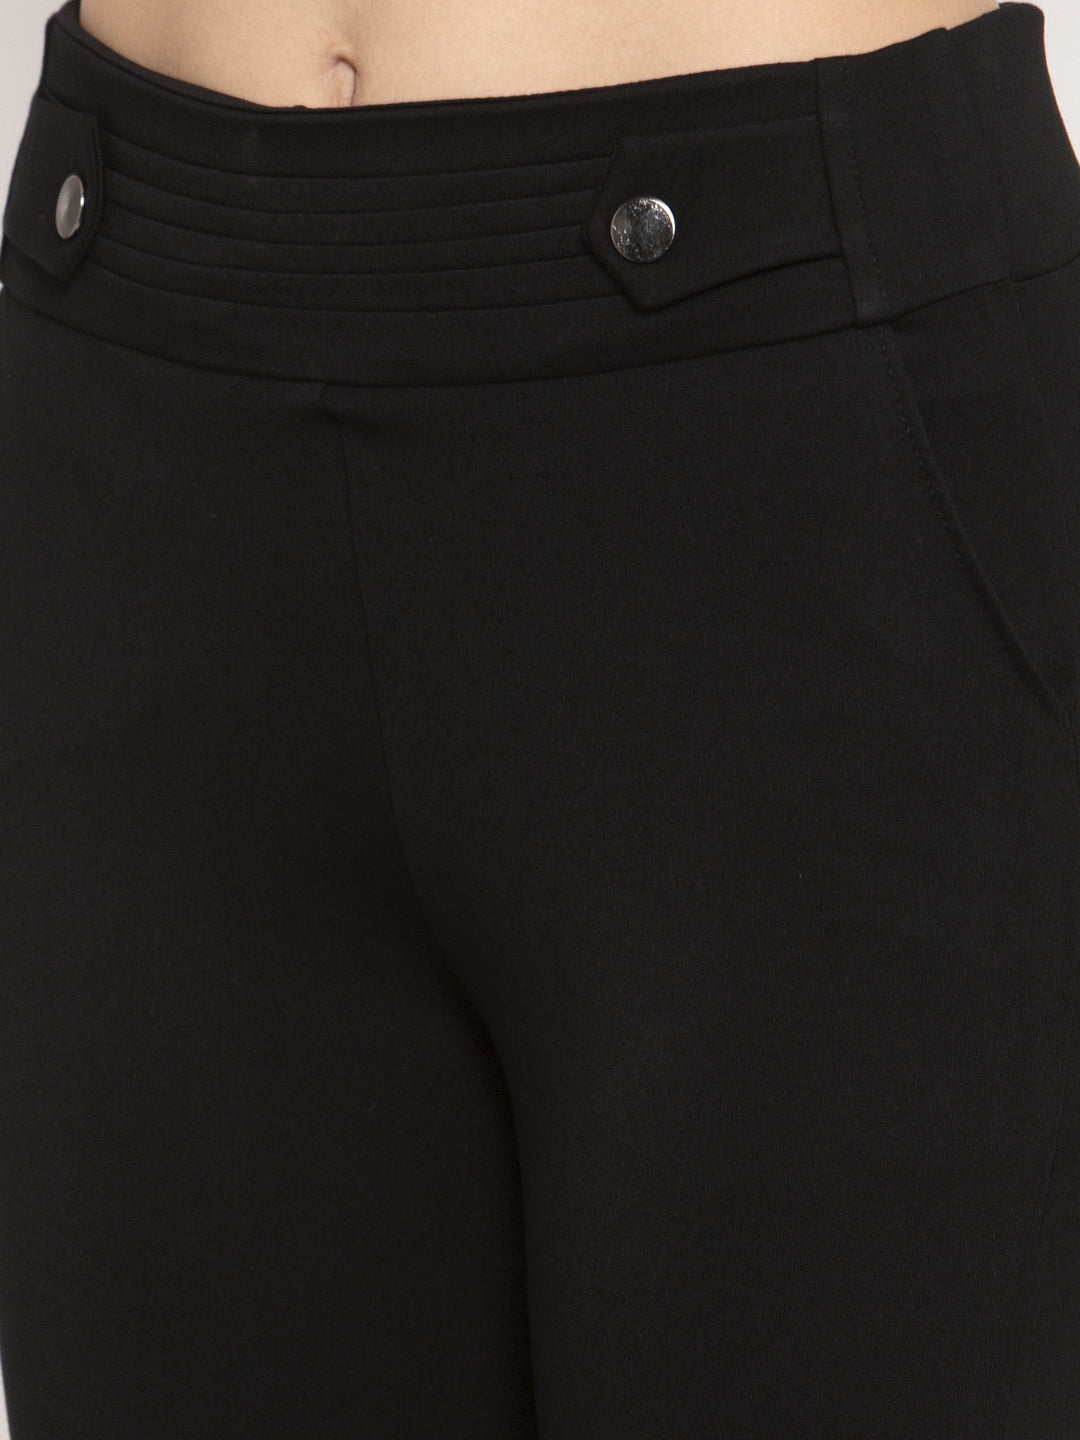 Women's Black Slim Fit Jeggings - Wahe-NOOR